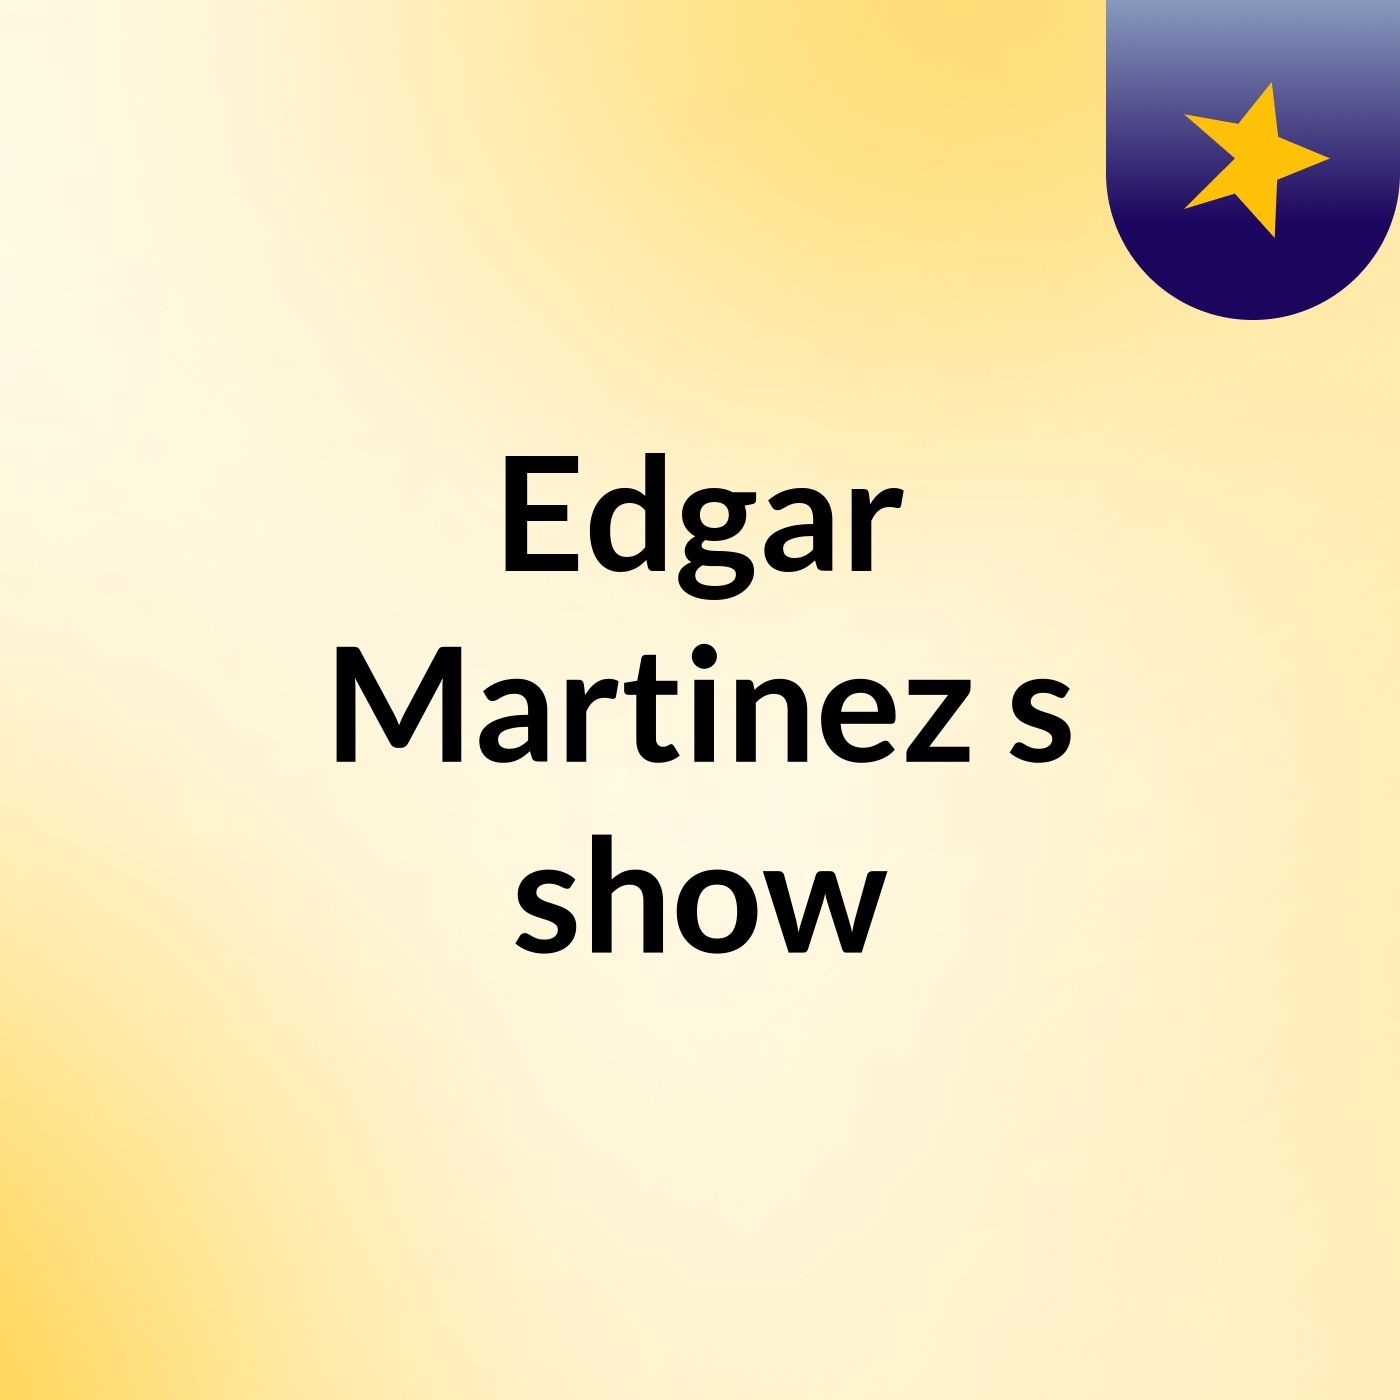 Edgar Martinez's show